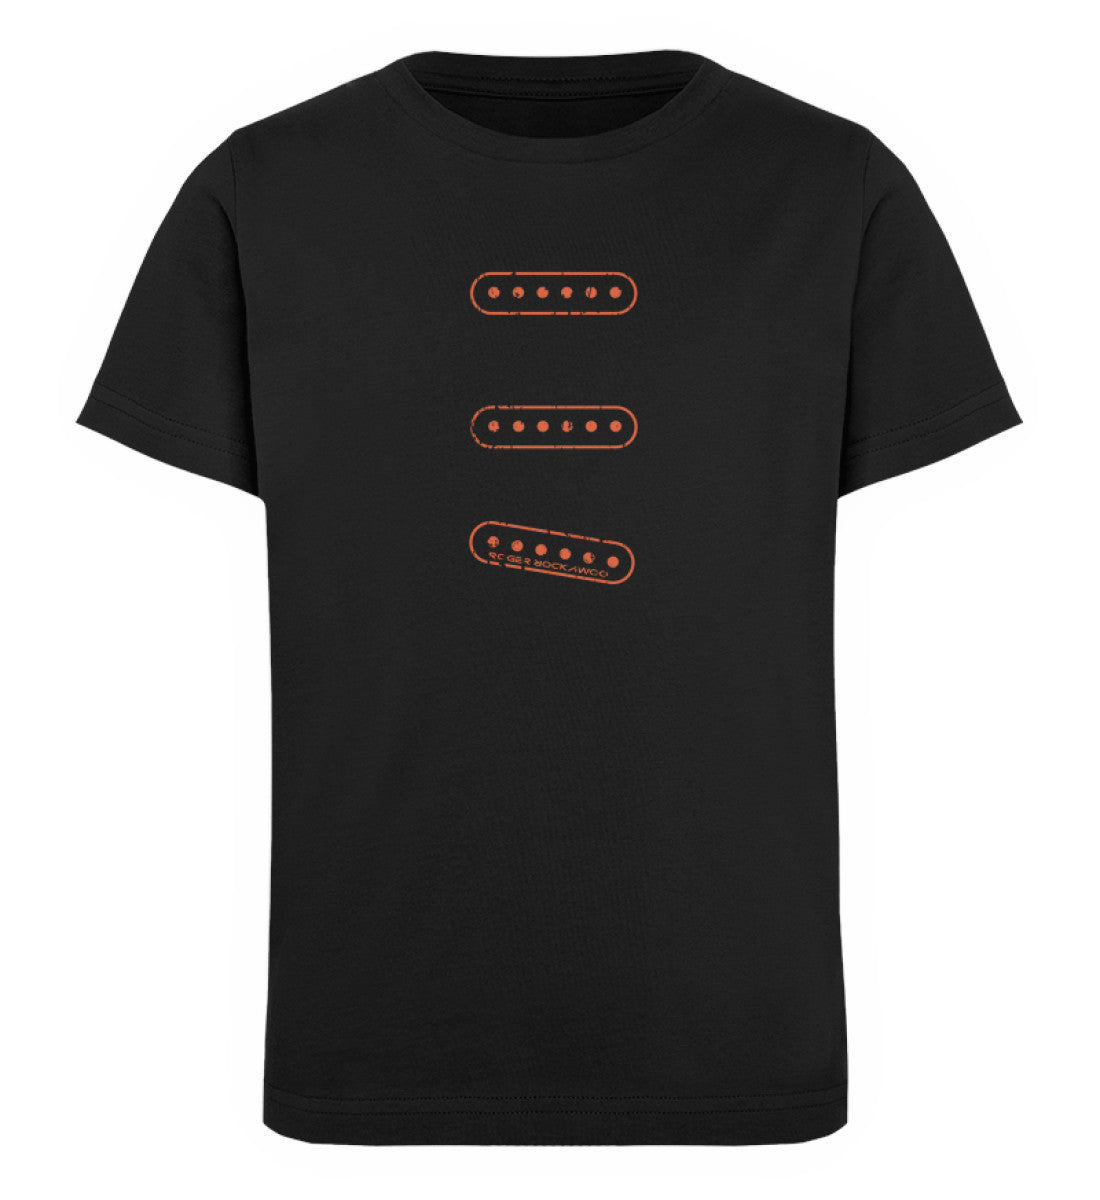 Schwarzes Kinder T-Shirt für Mädchen und Jungen bedruckt mit dem Design der Roger Rockawoo Kollektion e-guitar set up single coil